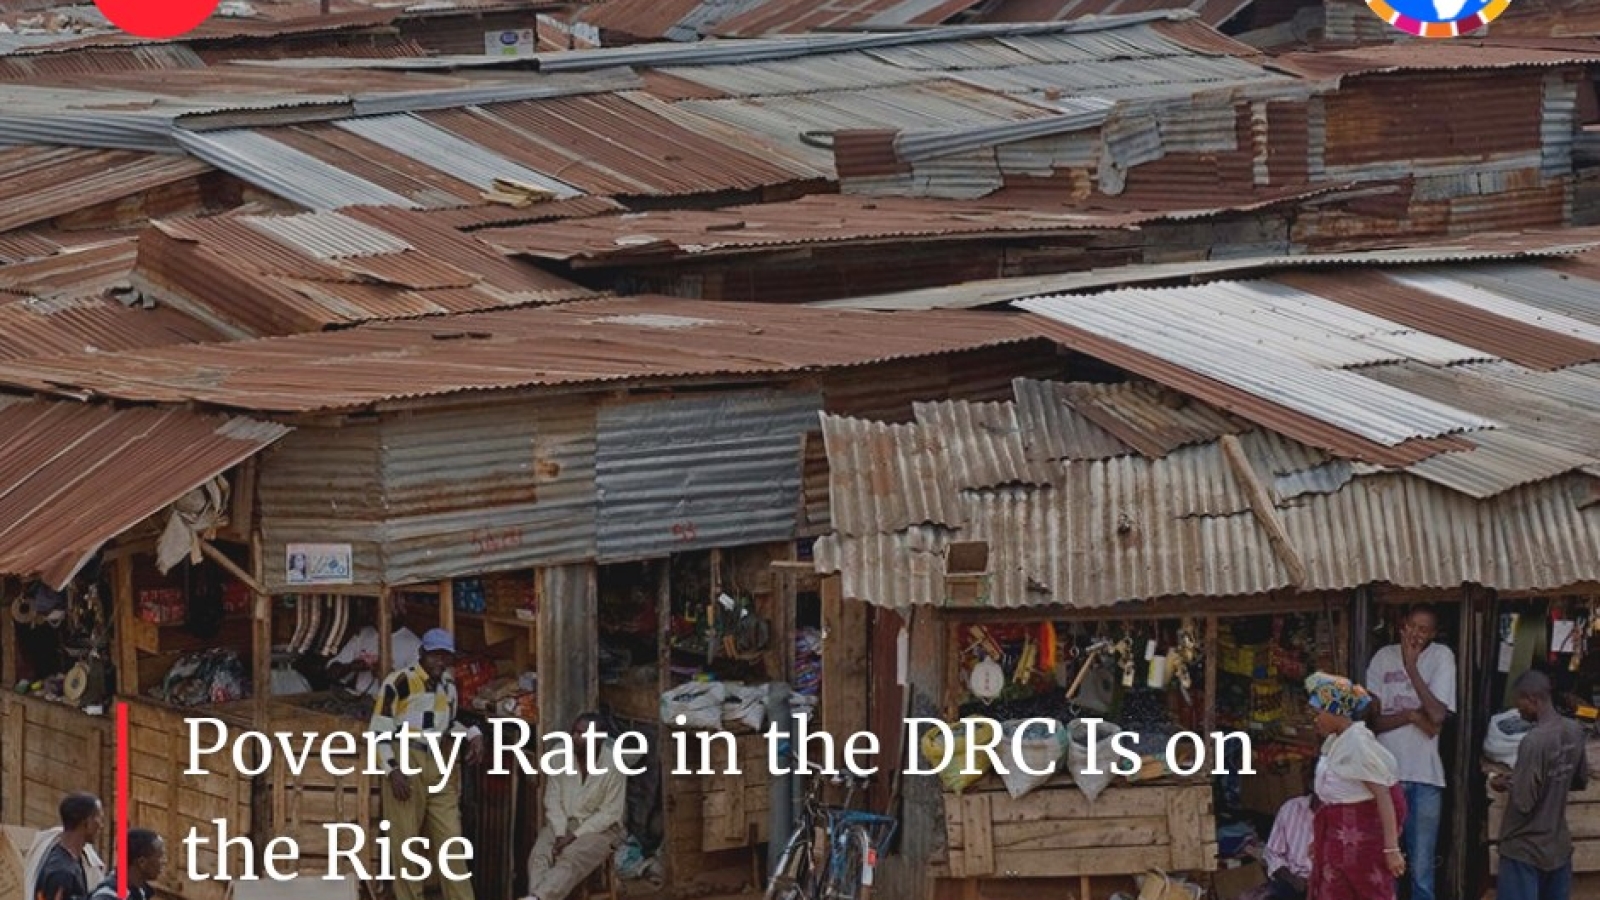 معدل الفقر في جمهورية الكونغو الديمقراطية آخذ في الارتفاع